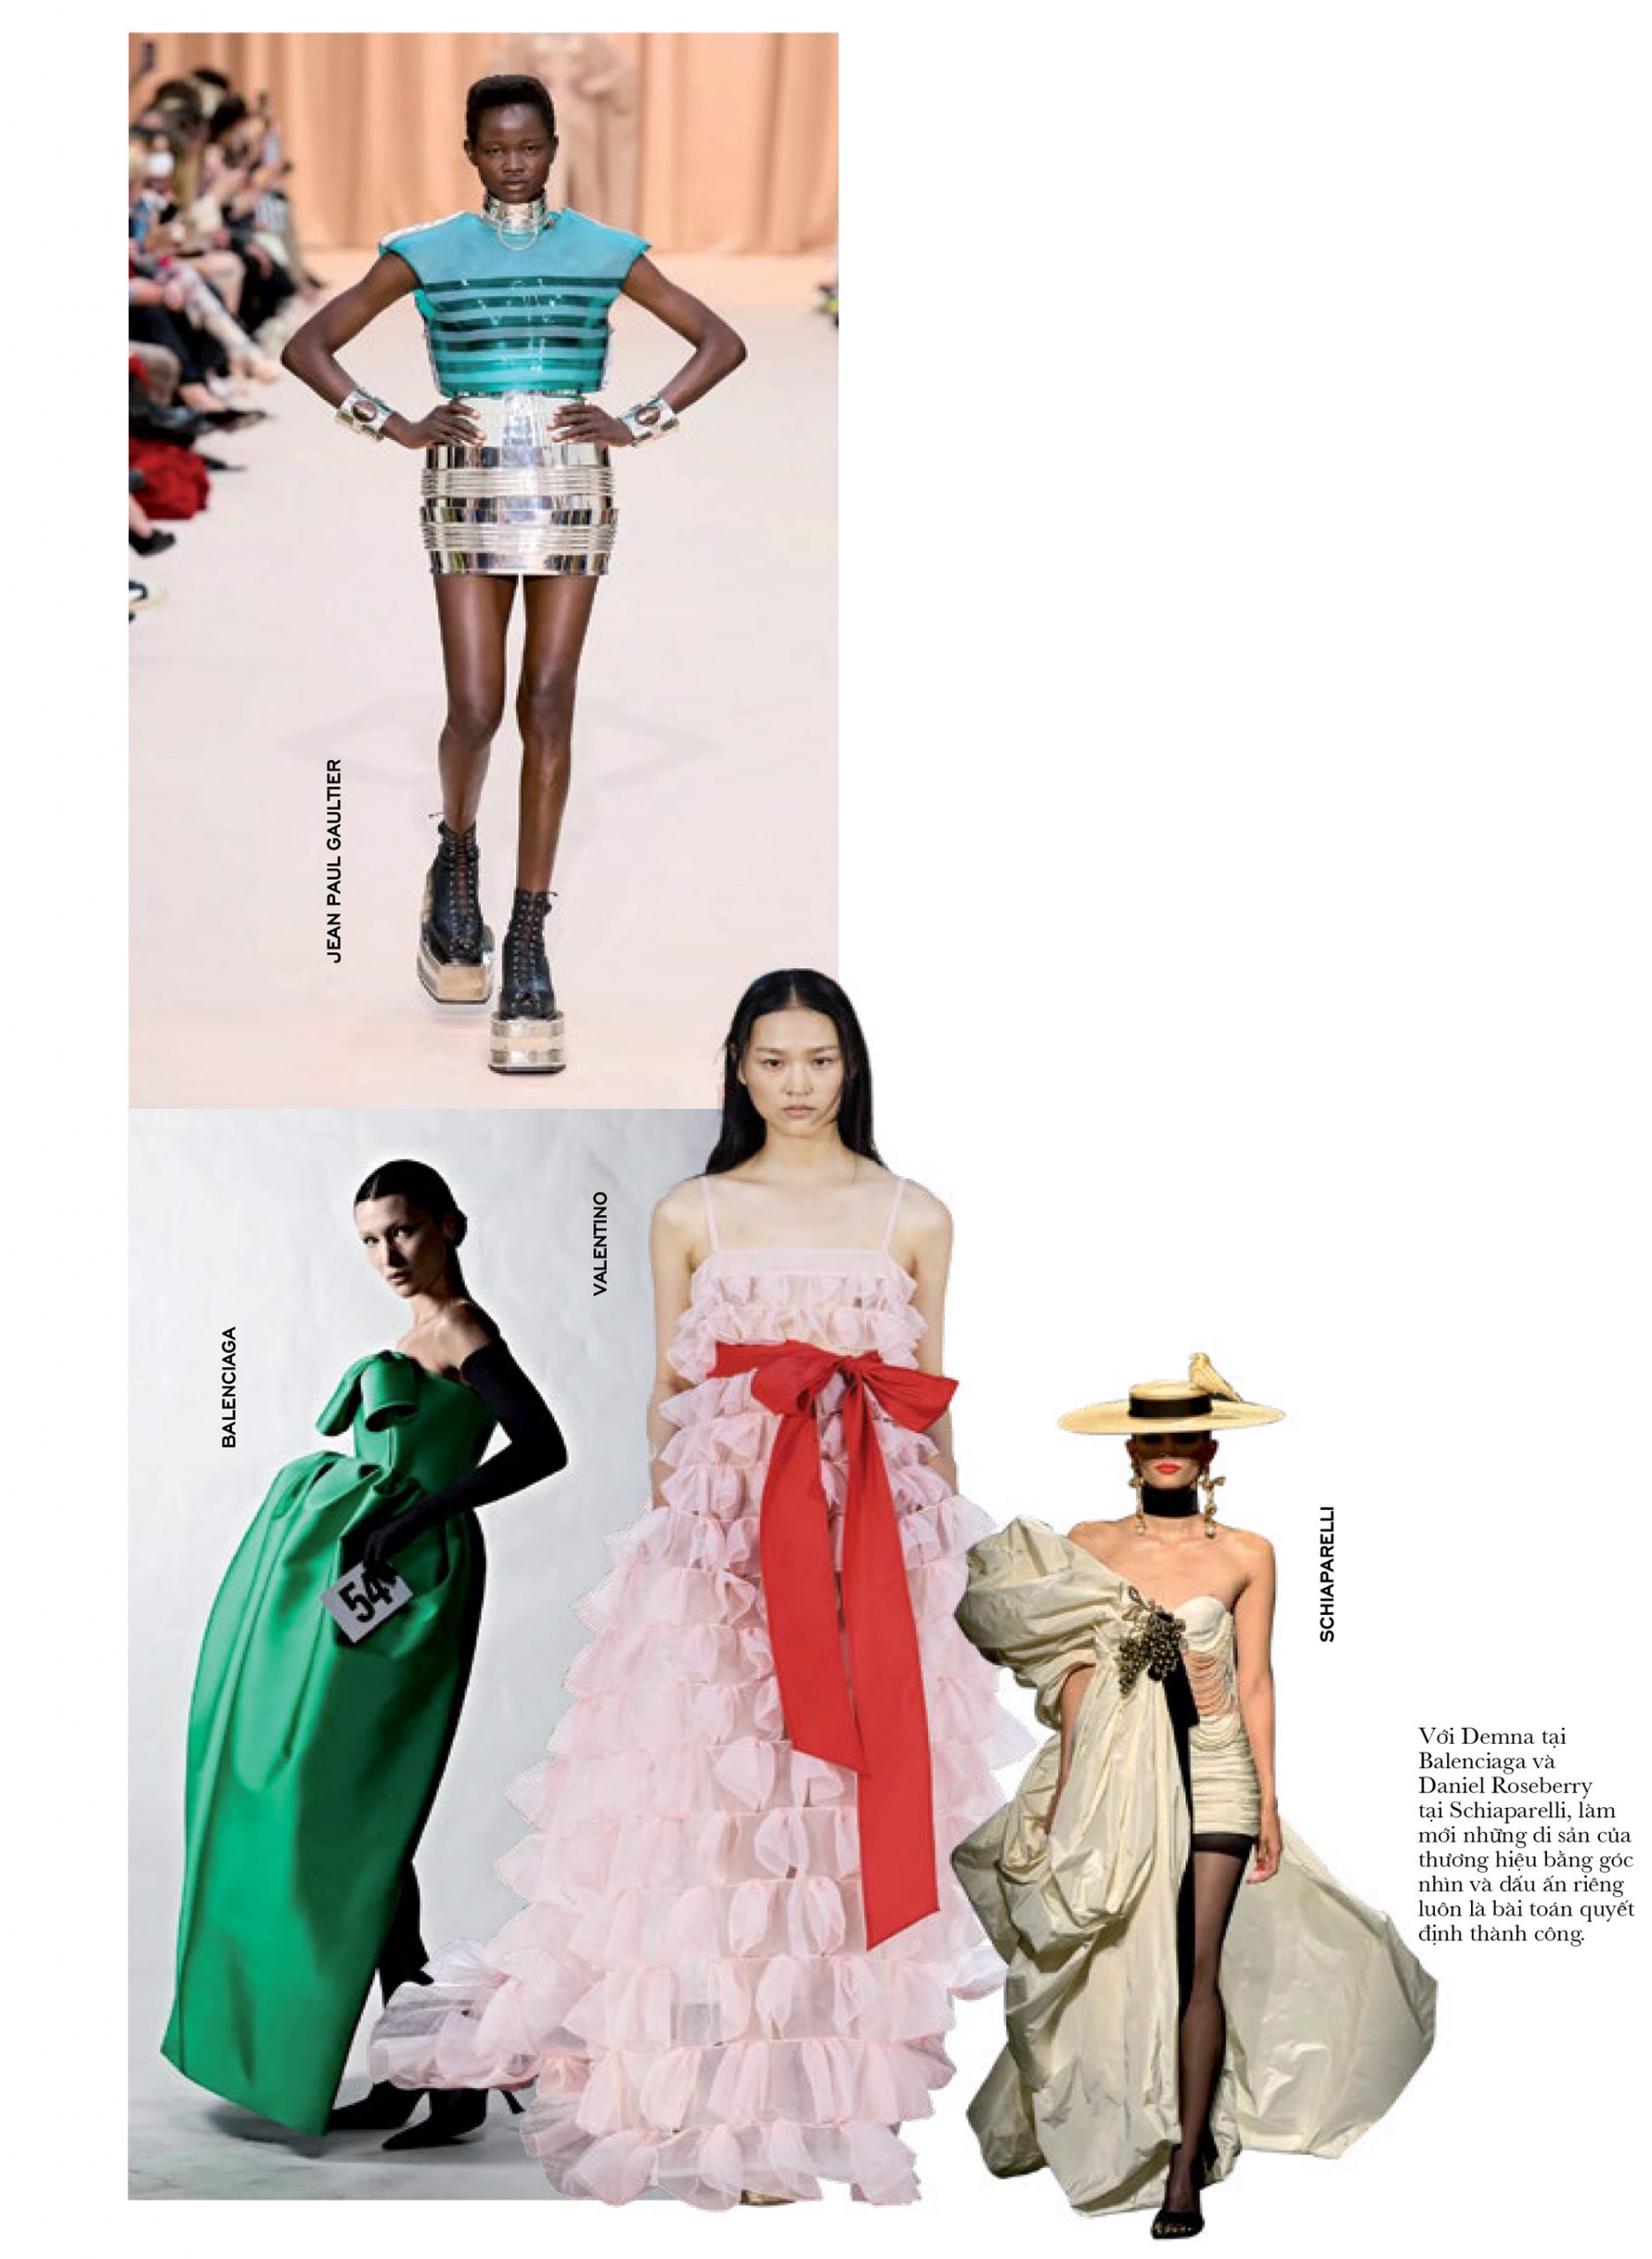 haute couture ke thua di san scaled - Haute Couture Thu – Đông 2022: Thời gian làm nên các giá trị phong phú